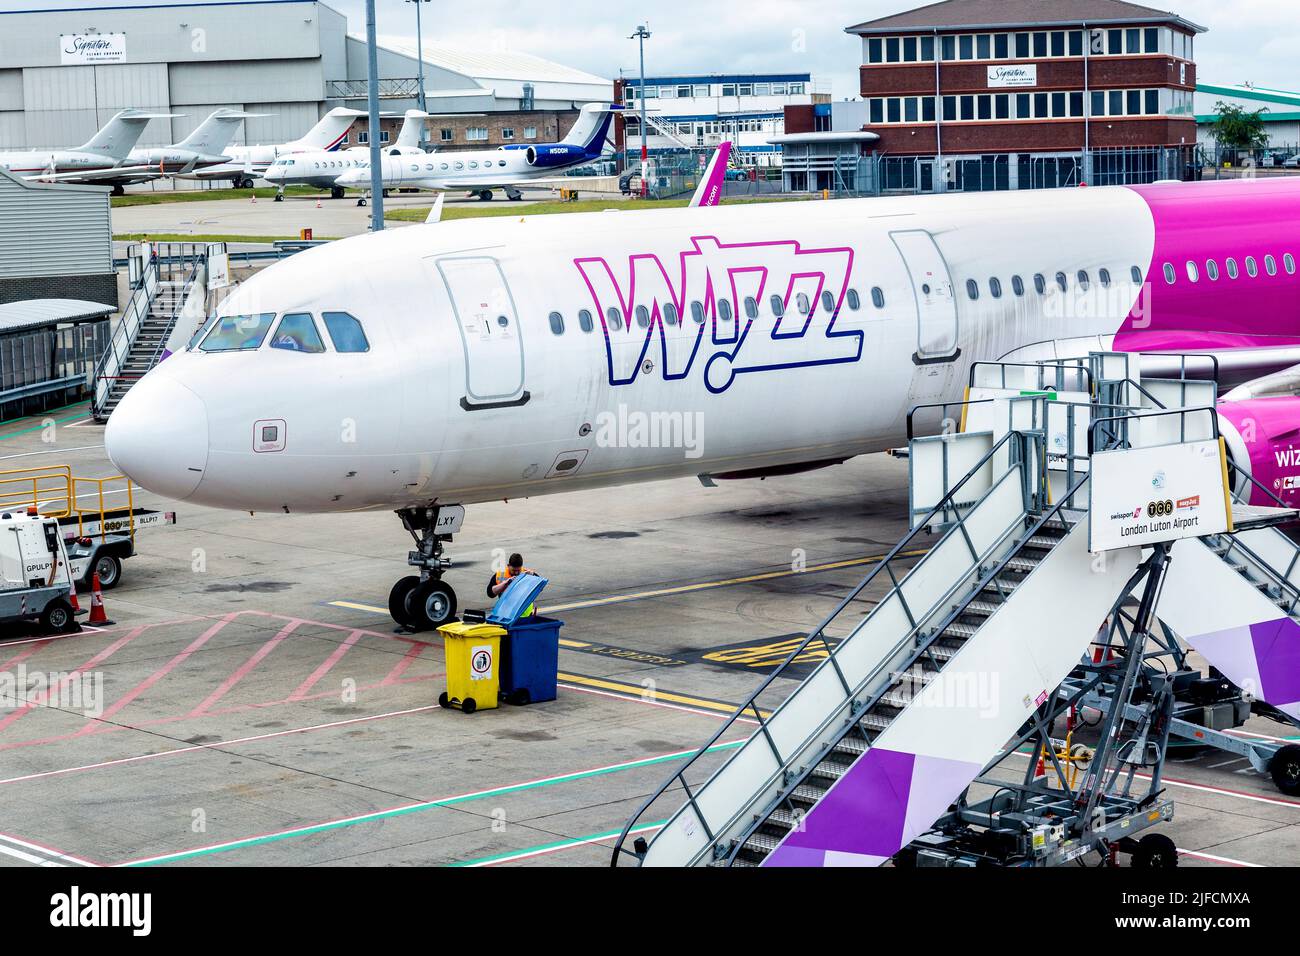 Wizz Air sur le tarmac à l'aéroport de Luton, Luton, Londres, Royaume-Uni Banque D'Images